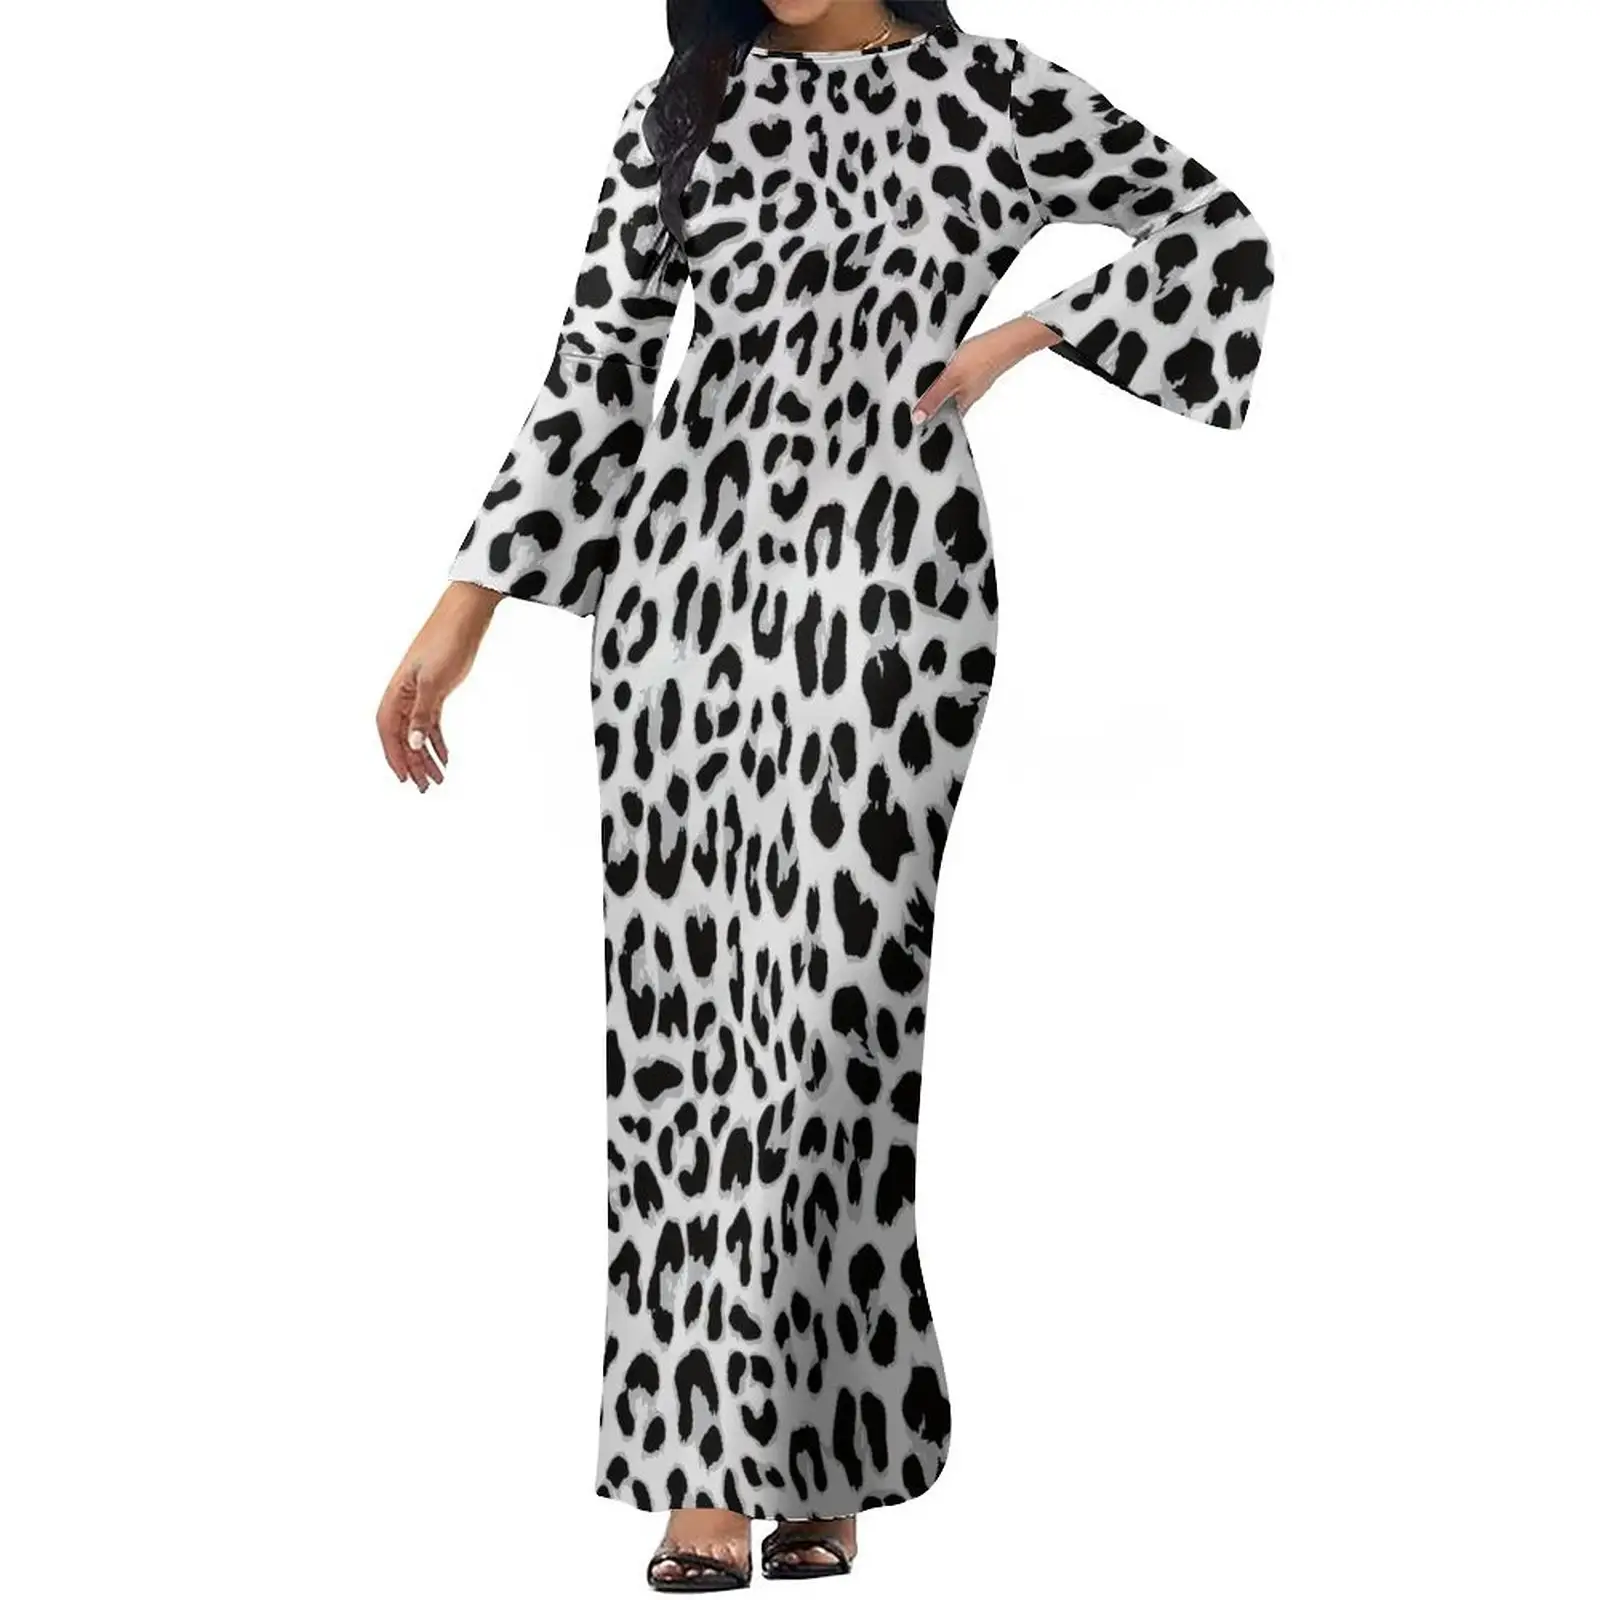 Benutzer definiertes Bild Undefinierte Damen kleider Leopard Printed Big Size 6XL 7XL 8XL Ausgestellte Ärmel Reiß verschluss Schlitz Club Party Bodycon Kleid